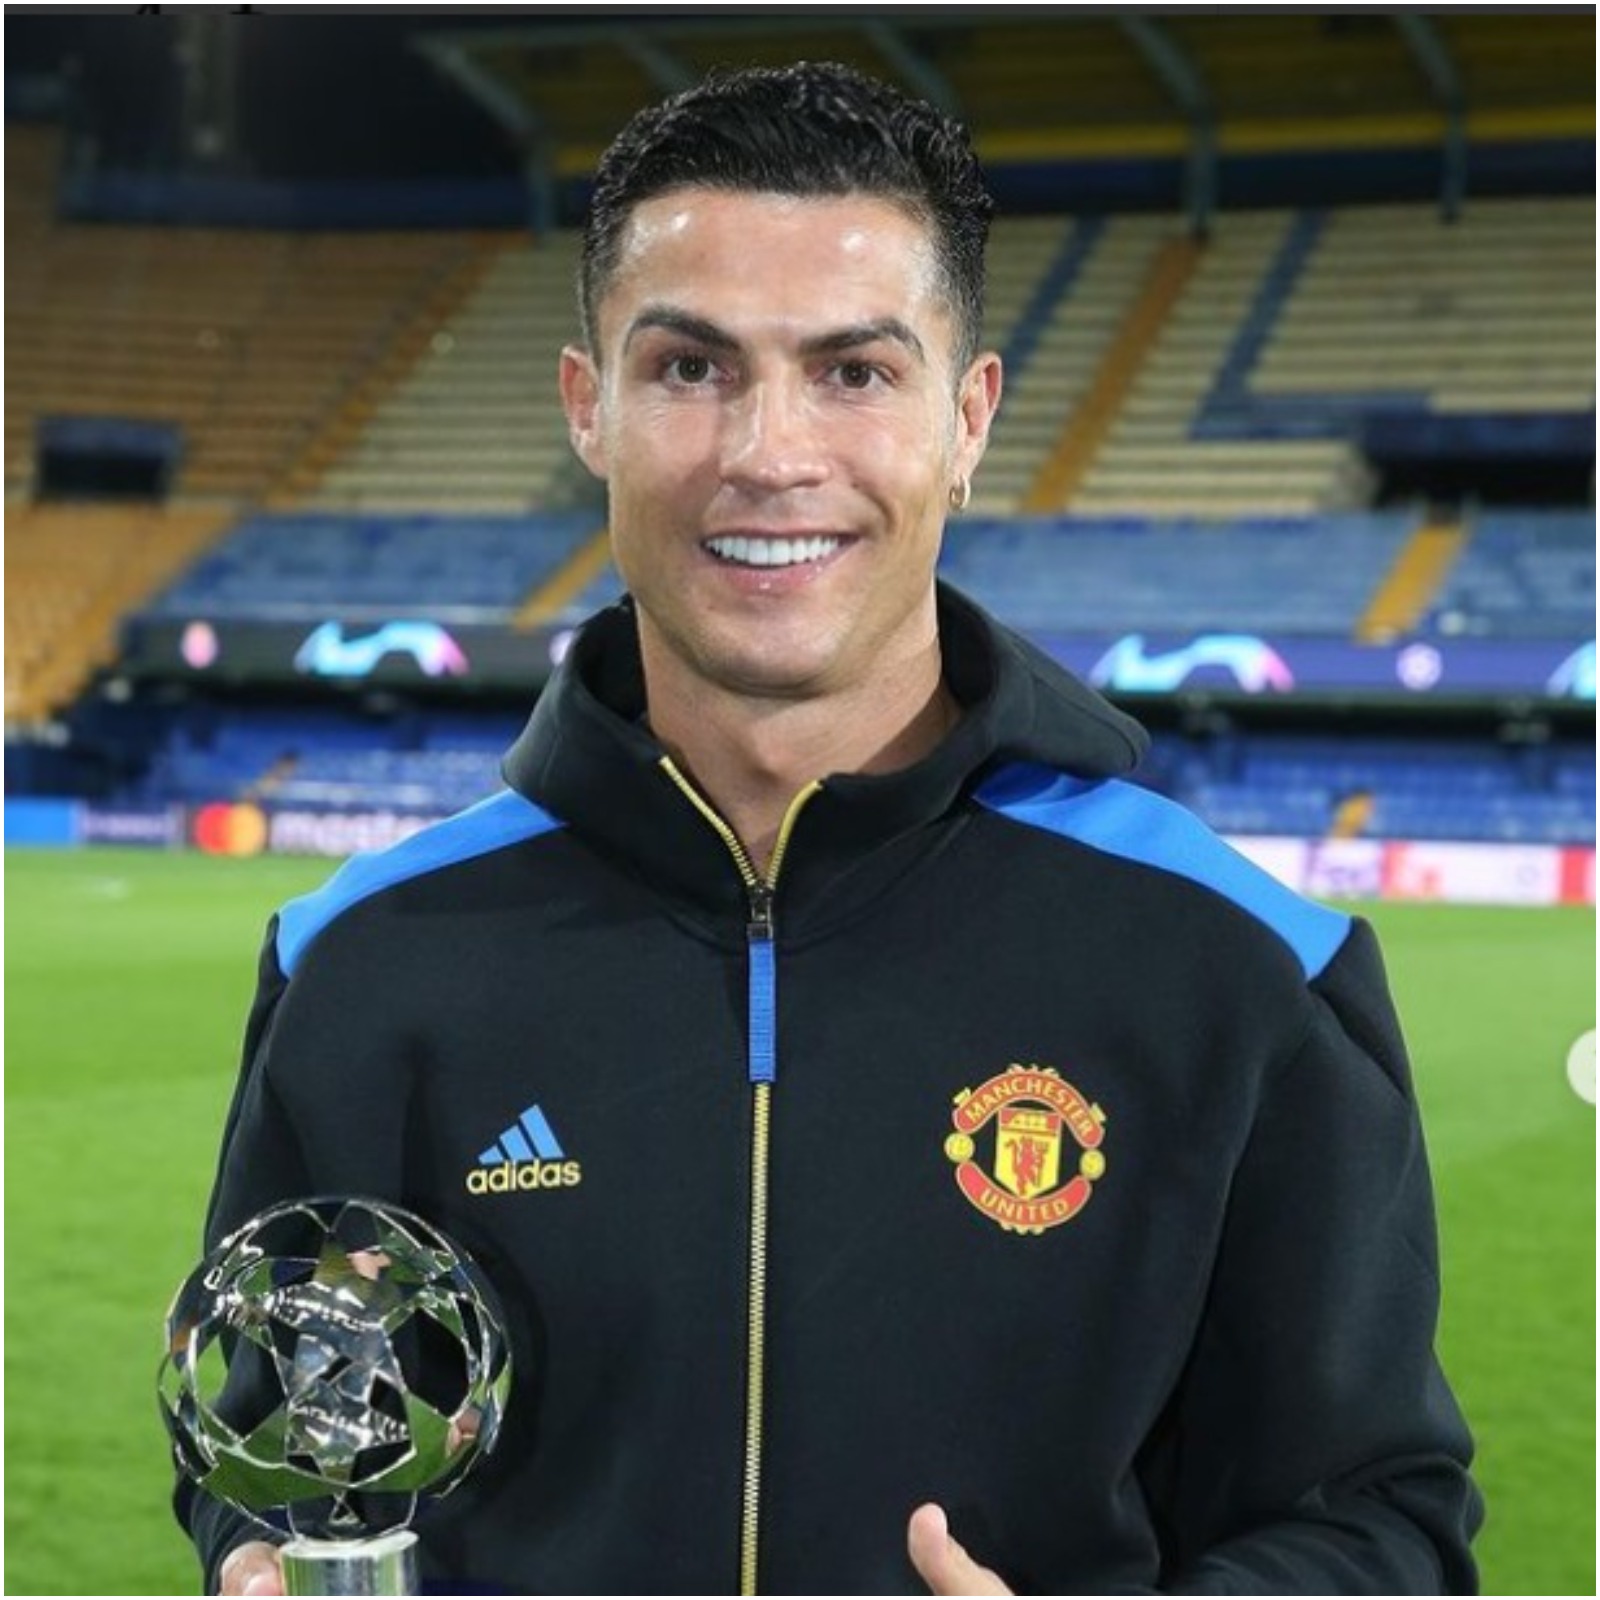  रोनाल्डो सबसे अधिक 184 अंतरराष्ट्रीय मैच खेलने वाले यूरोपीय खिलाड़ी हैं. वो पांच बार फुटबॉल का प्रतिष्ठित Ballon d’Or अवॉर्ड जीत चुके हैं. हालांकि, अर्जेंटीना के लियोनल मेसी ने उनसे ज्यादा 7 बार यह खिताब जीता है. हाल ही में मेसी ने रिकॉर्ड सातवीं बार यह पुरस्कार जीता है. (Christiano Ronaldo Instagram)